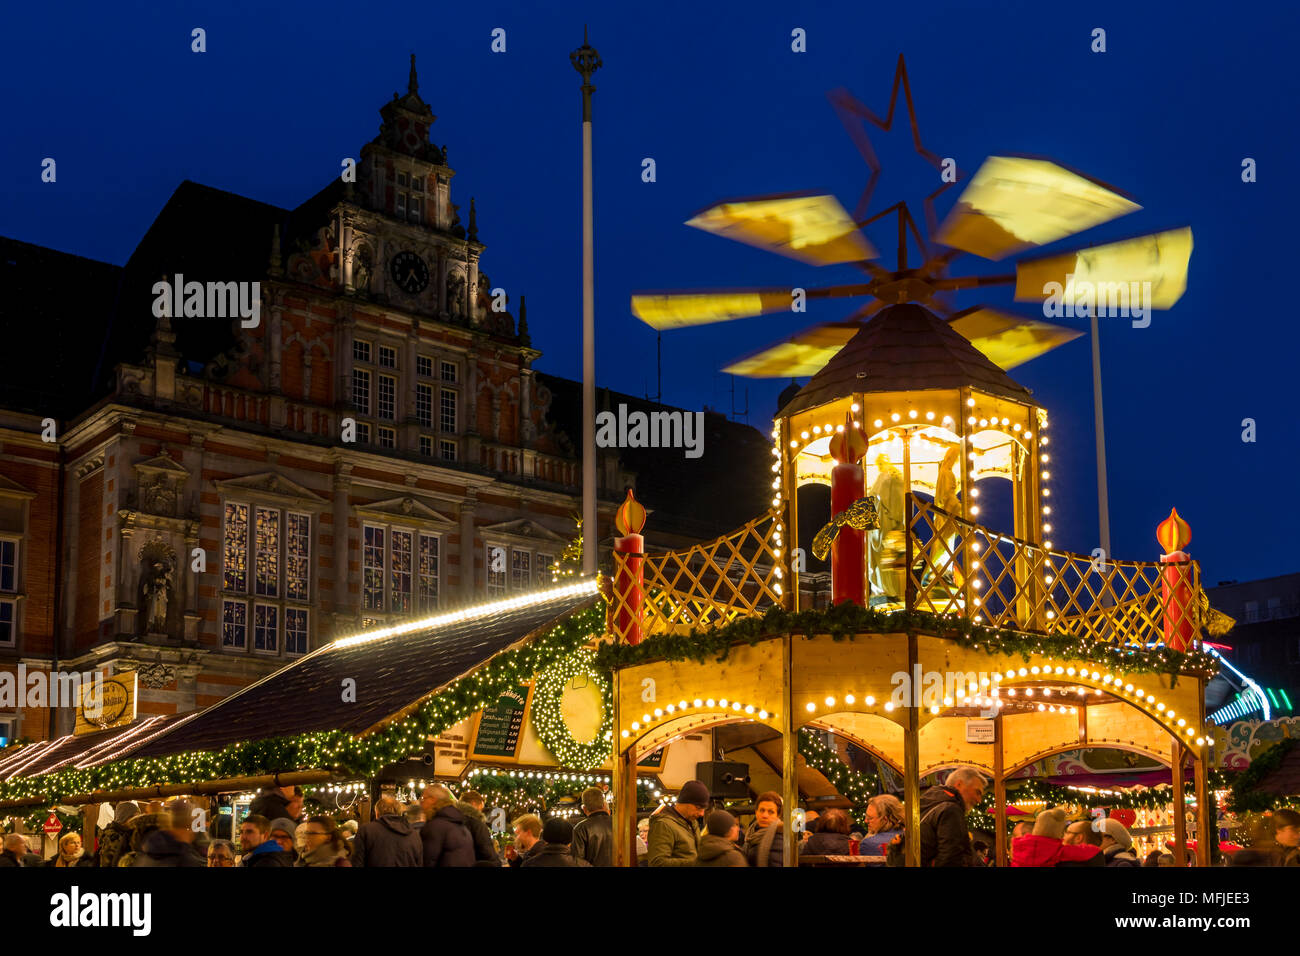 Mercado navideño en la plaza del ayuntamiento de la ciudad al atardecer en Harburg, un distrito de Hamburgo, Alemania, Europa Foto de stock